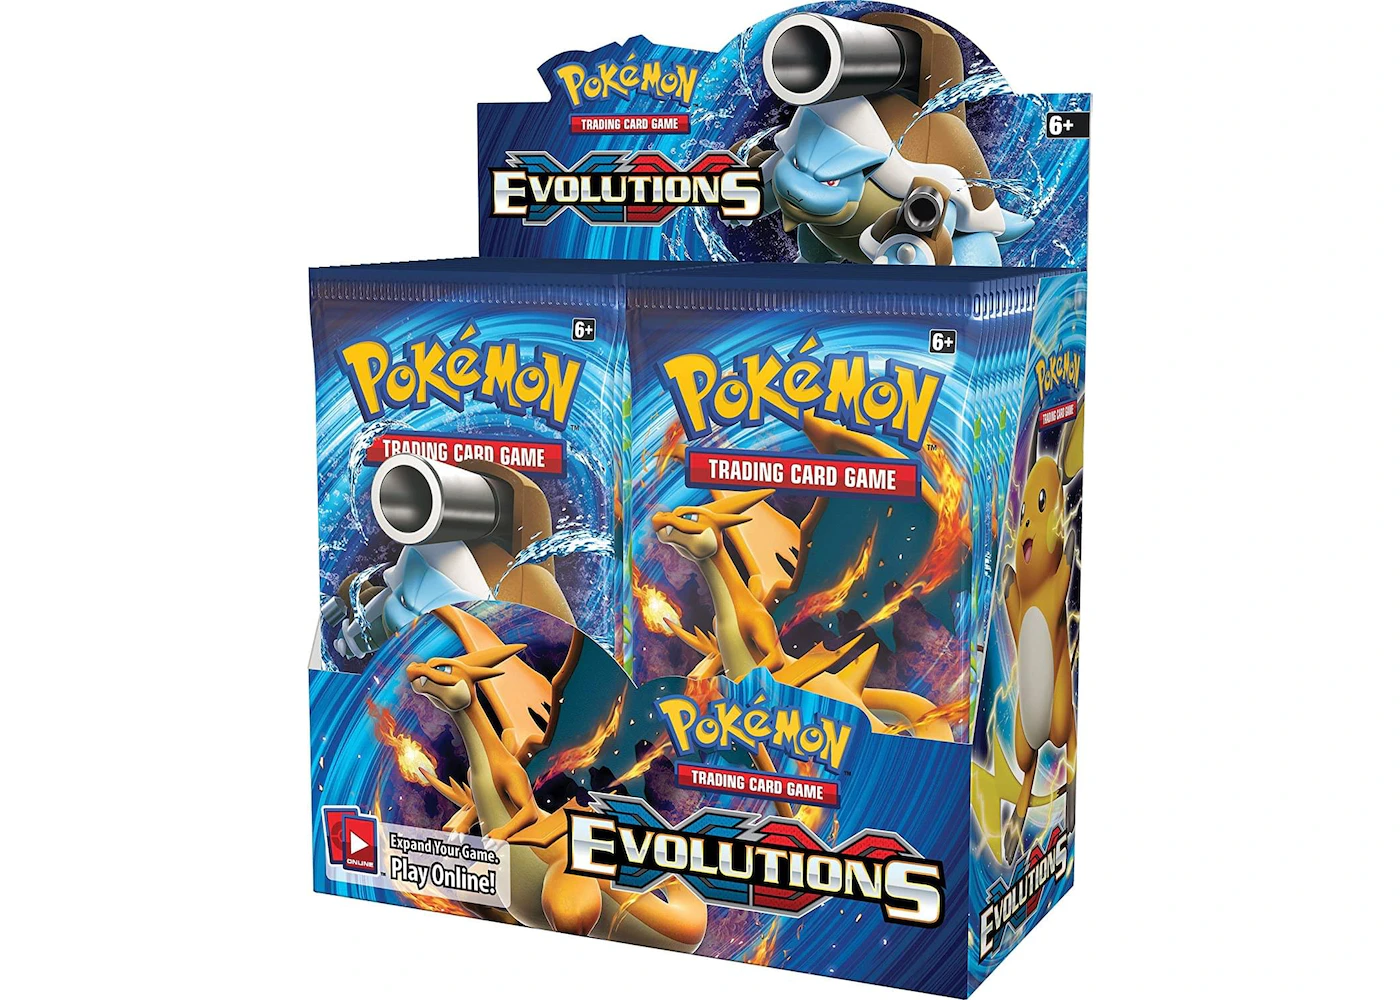 Leven van Voorbijgaand Herformuleren 2016 Pokemon XY Evolutions Booster Box - US